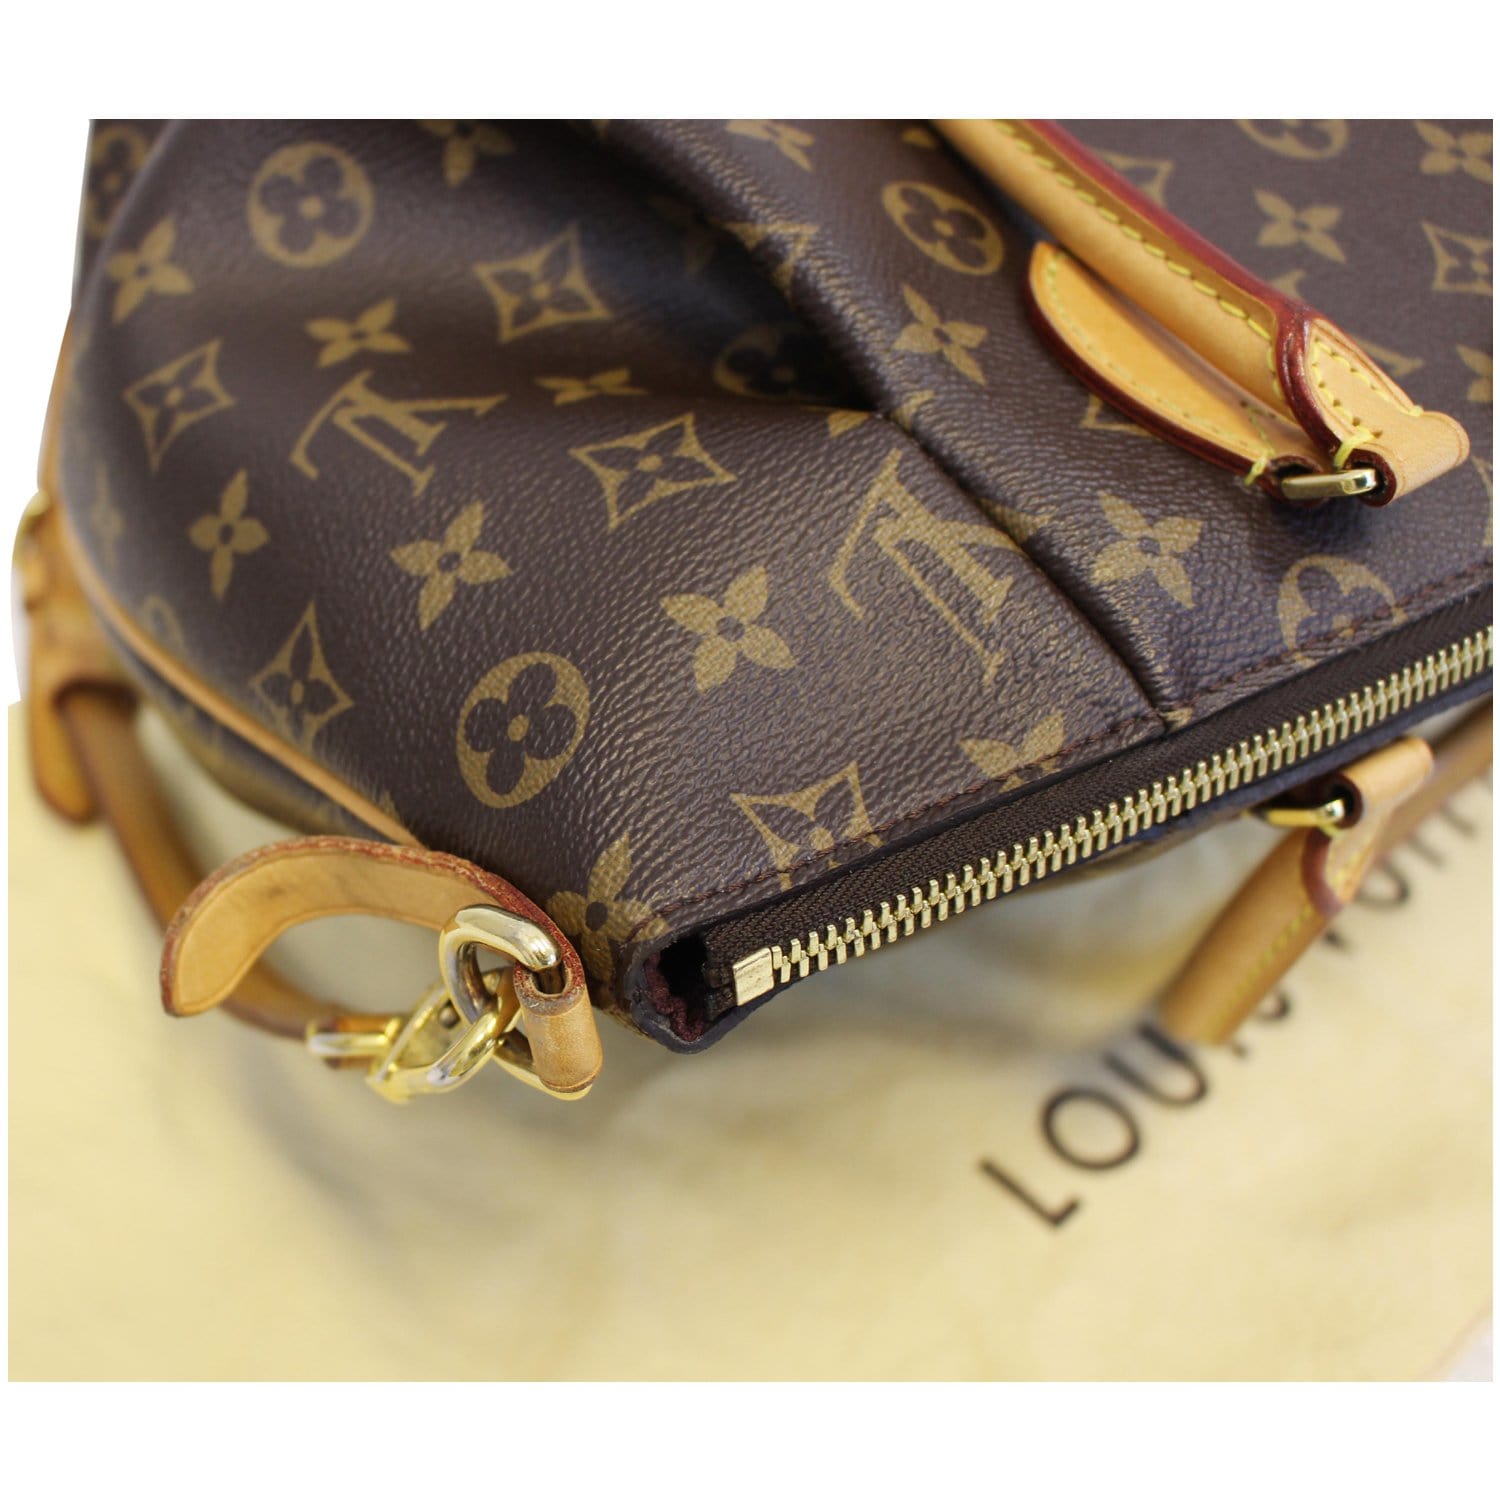 Preloved Louis Vuitton Turenne mm (Medium) Monogram Canvas Handbag FL3107 090123 Off